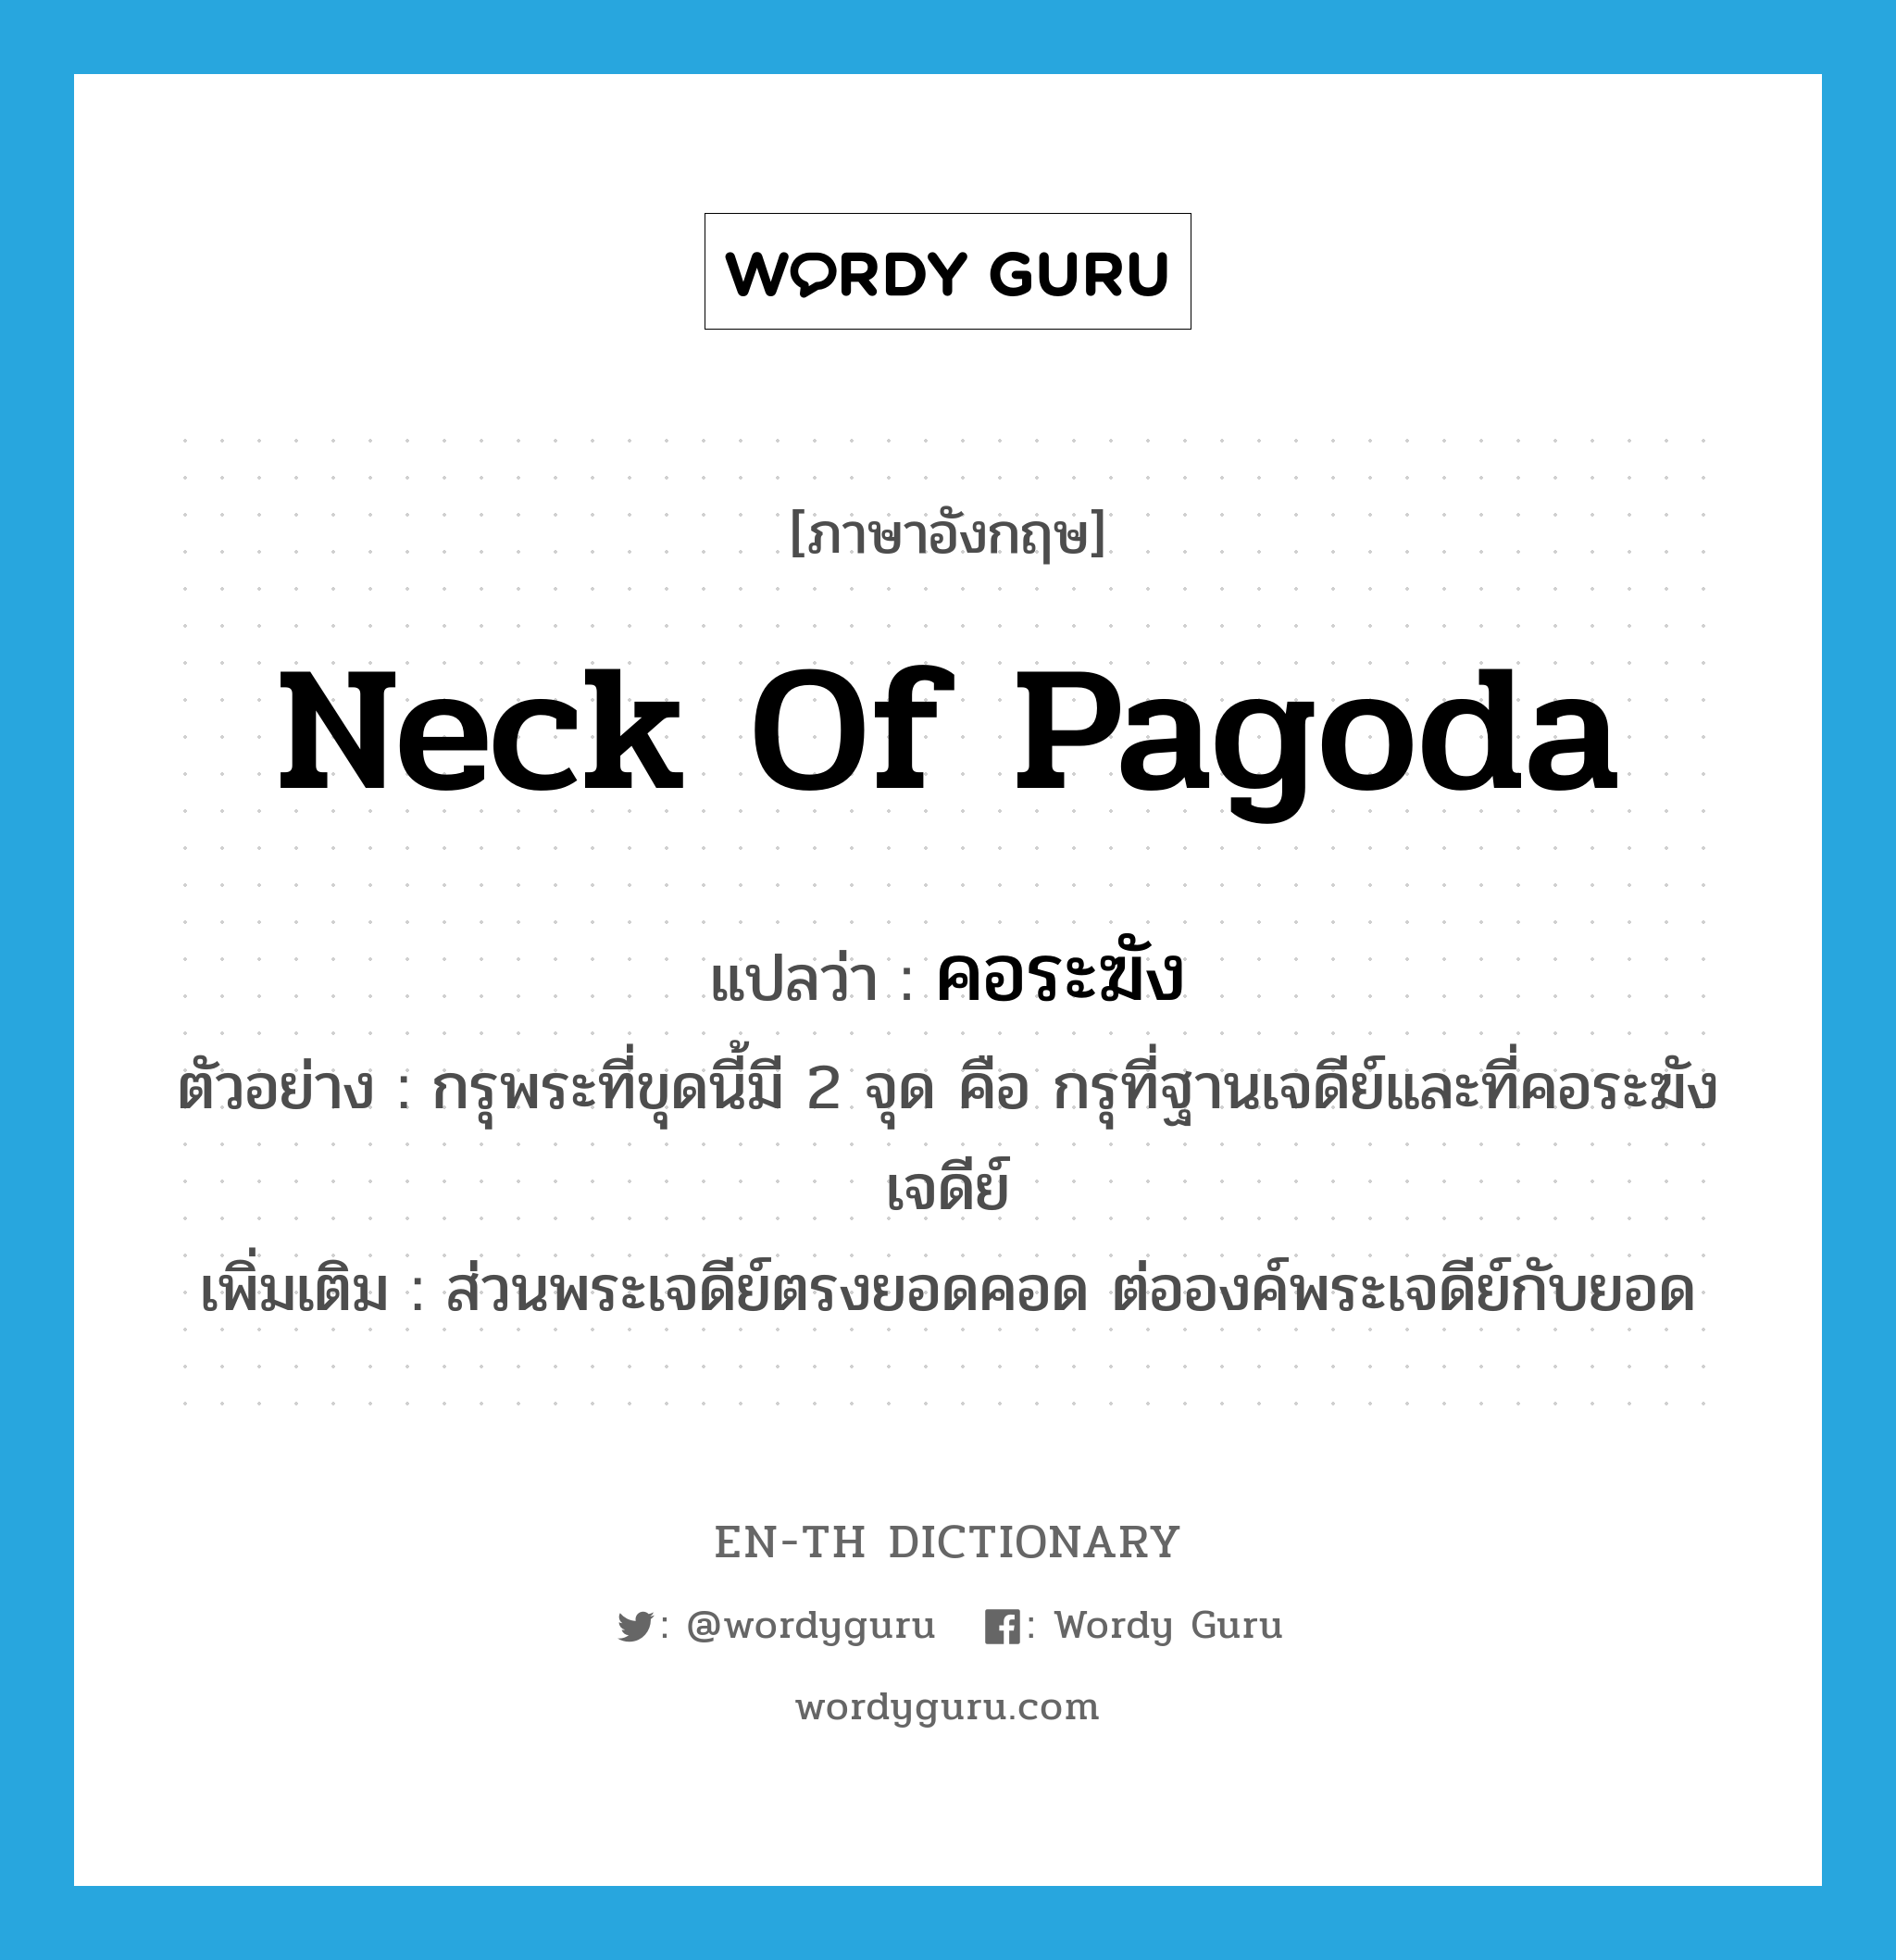 neck of pagoda แปลว่า?, คำศัพท์ภาษาอังกฤษ neck of pagoda แปลว่า คอระฆัง ประเภท N ตัวอย่าง กรุพระที่ขุดนี้มี 2 จุด คือ กรุที่ฐานเจดีย์และที่คอระฆังเจดีย์ เพิ่มเติม ส่วนพระเจดีย์ตรงยอดคอด ต่อองค์พระเจดีย์กับยอด หมวด N